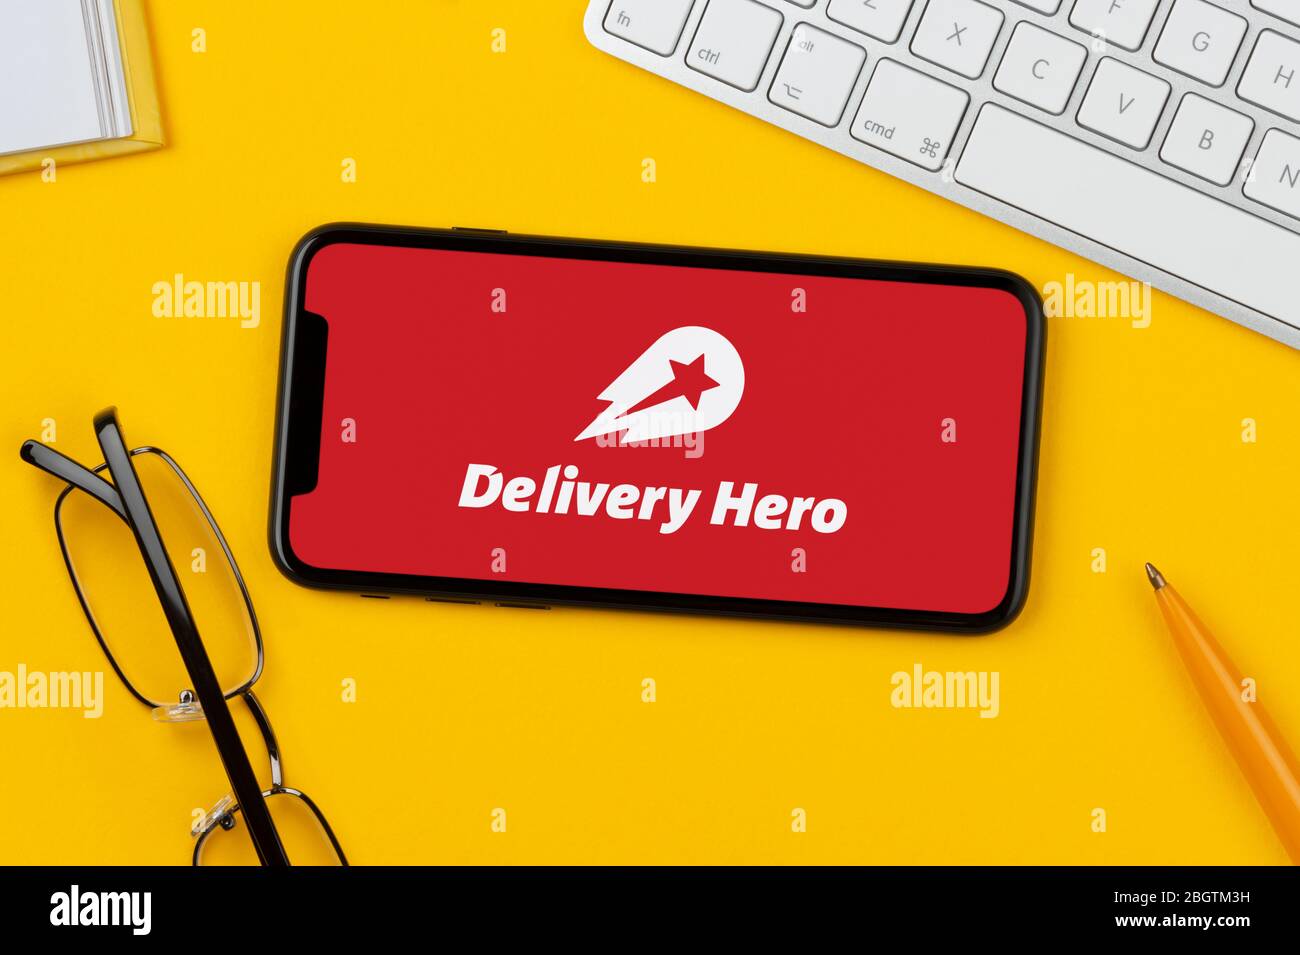 Ein Smartphone mit dem Delivery Hero Logo liegt auf einem gelben Hintergrund zusammen mit Tastatur, Brille, Stift und Buch (nur für redaktionelle Verwendung). Stockfoto